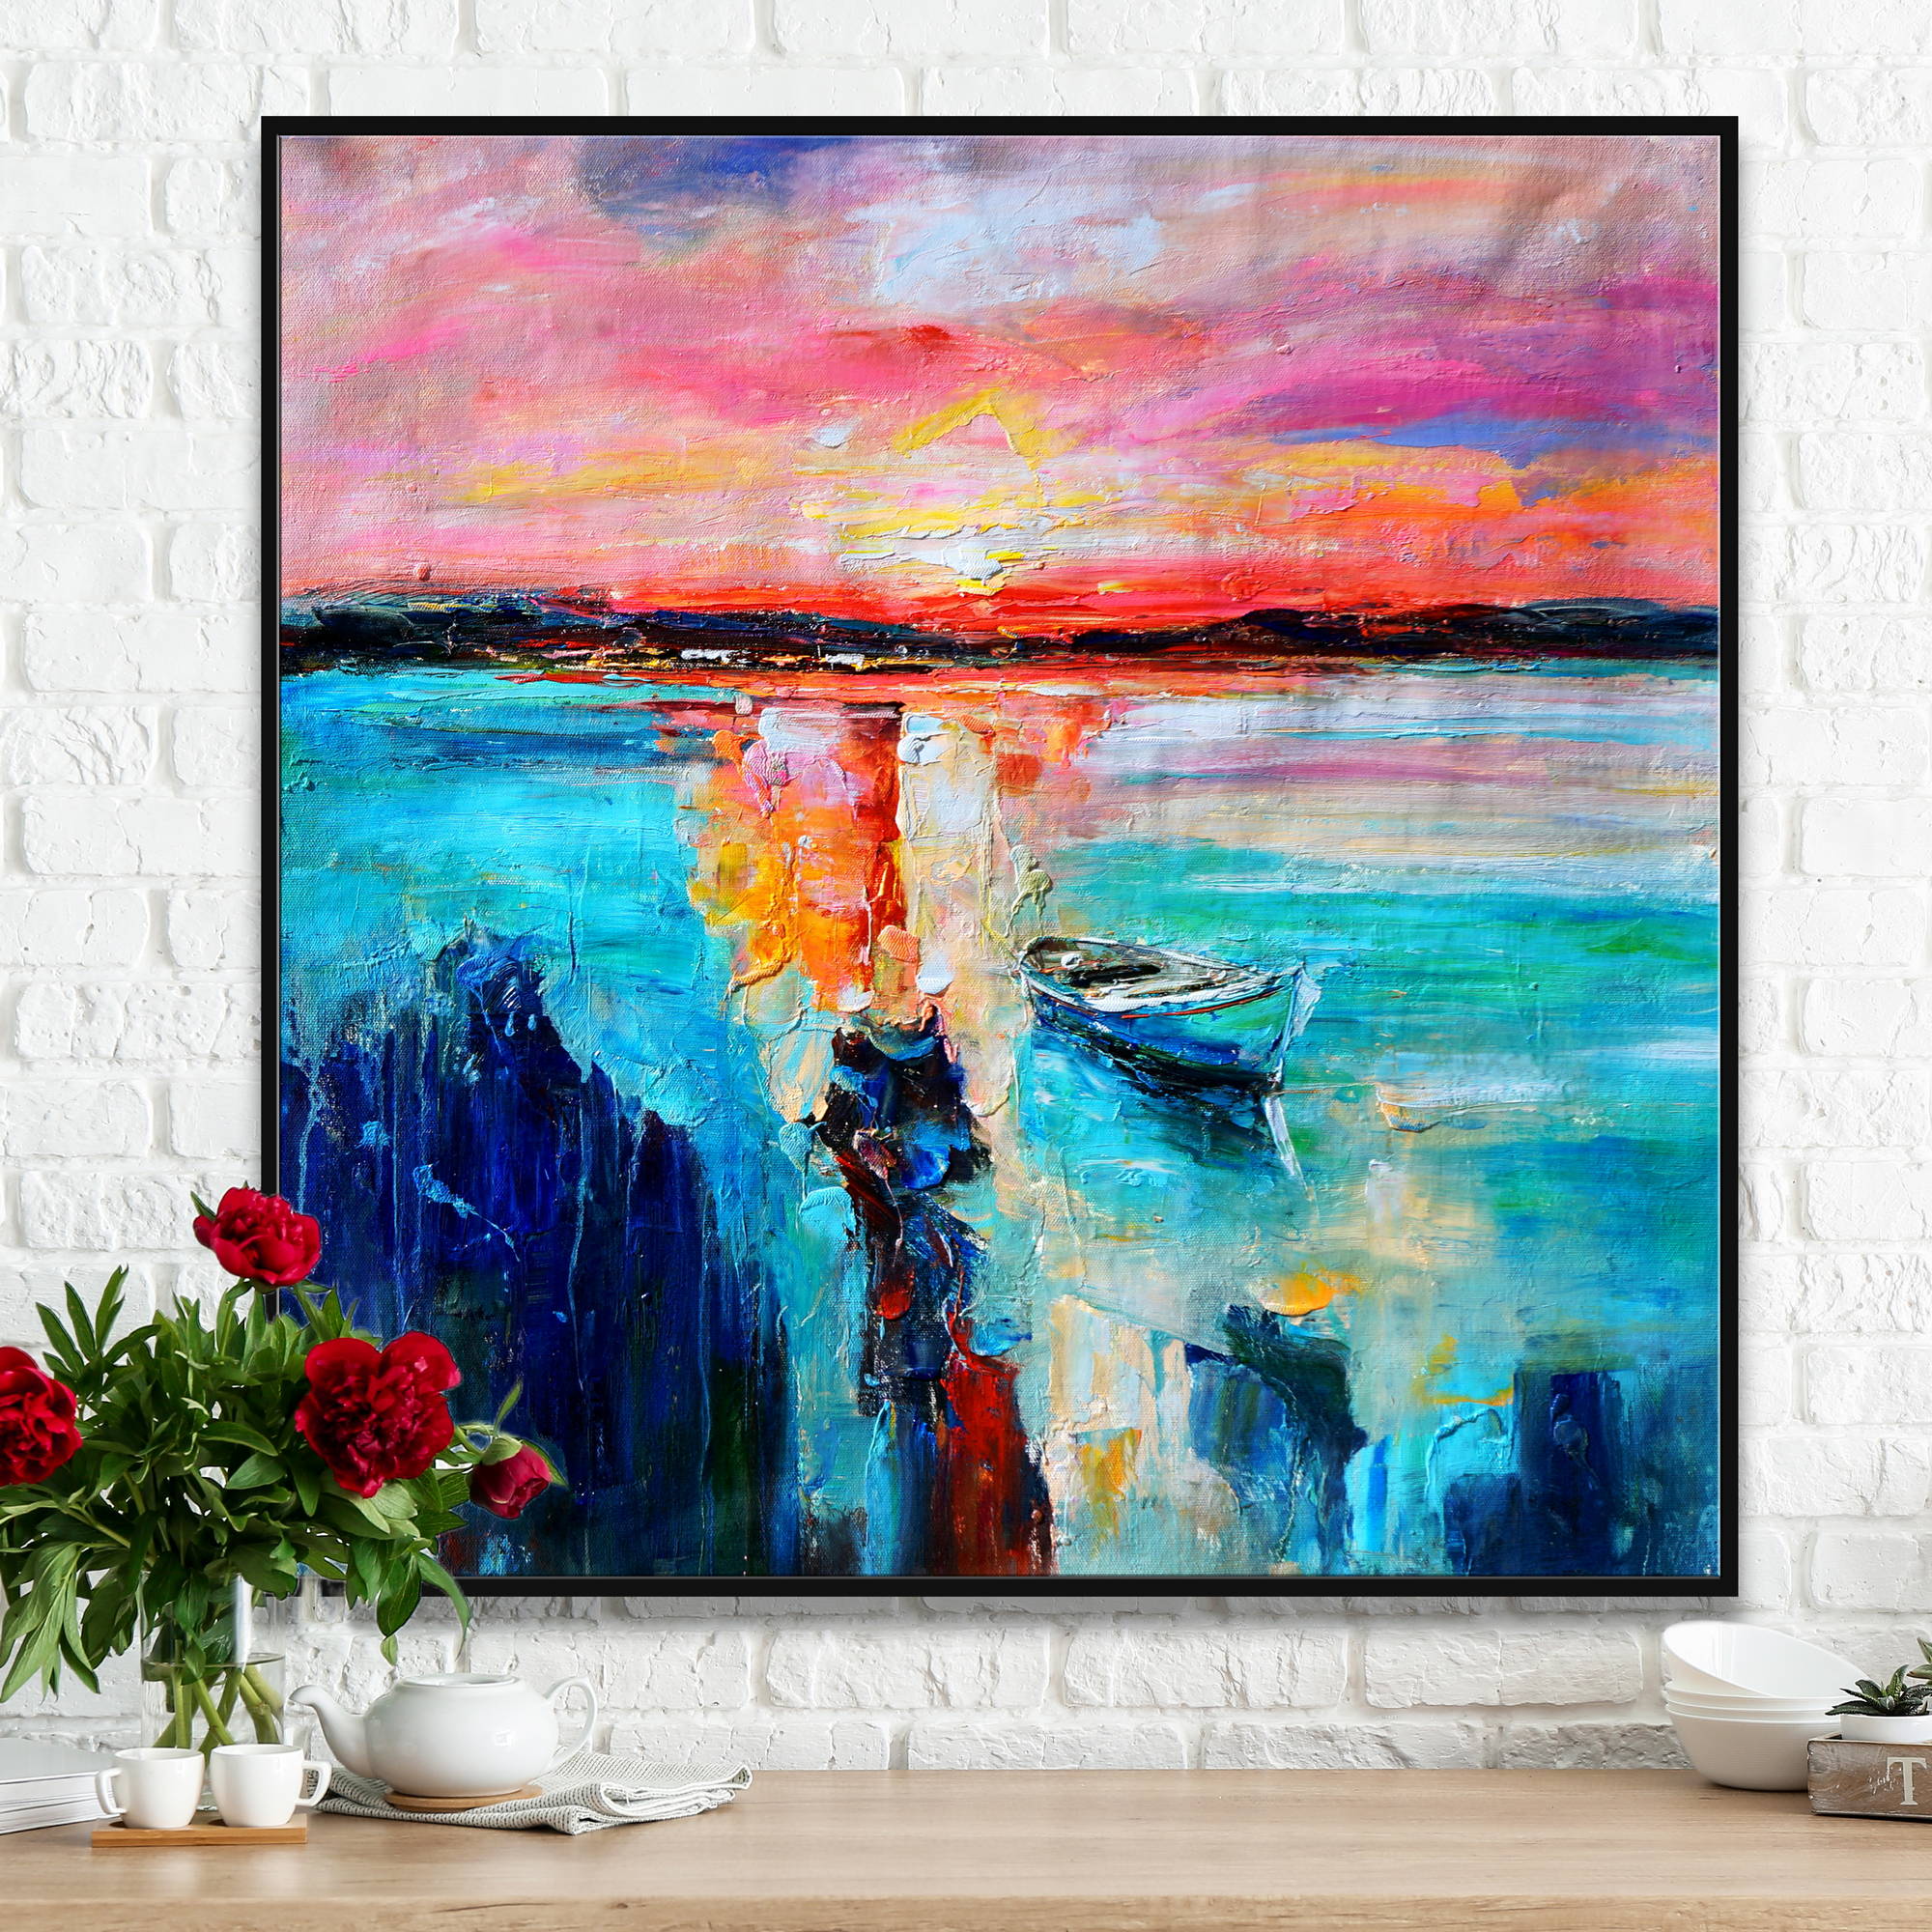 Quadro astratto raffigurante un tramonto con riflessi sull'acqua